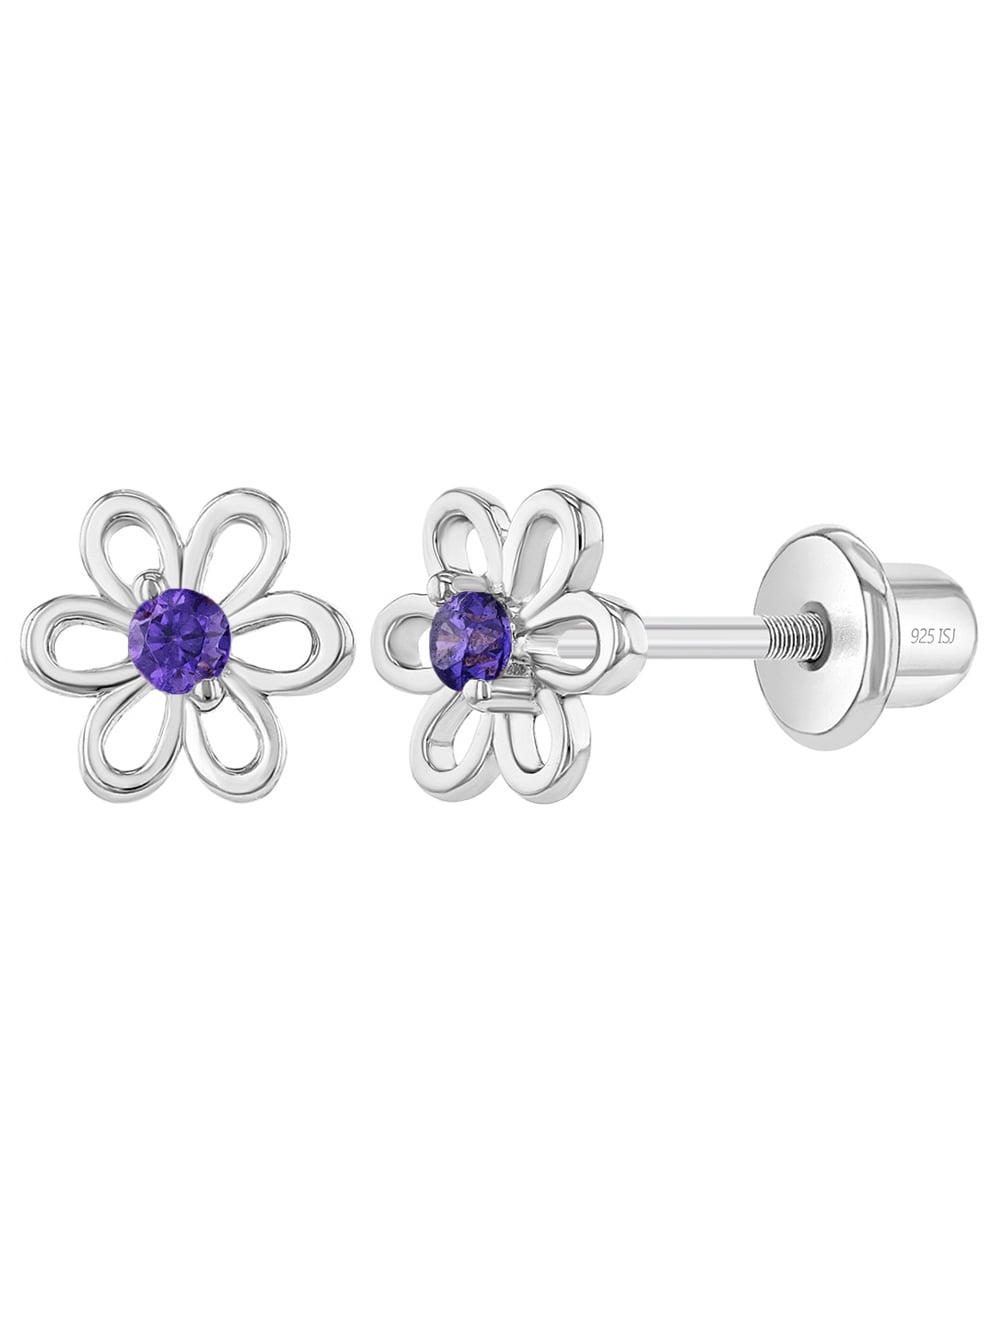 Details about   Chic Amethyst Gemstone Chain Bracelet Set In Rhodium 